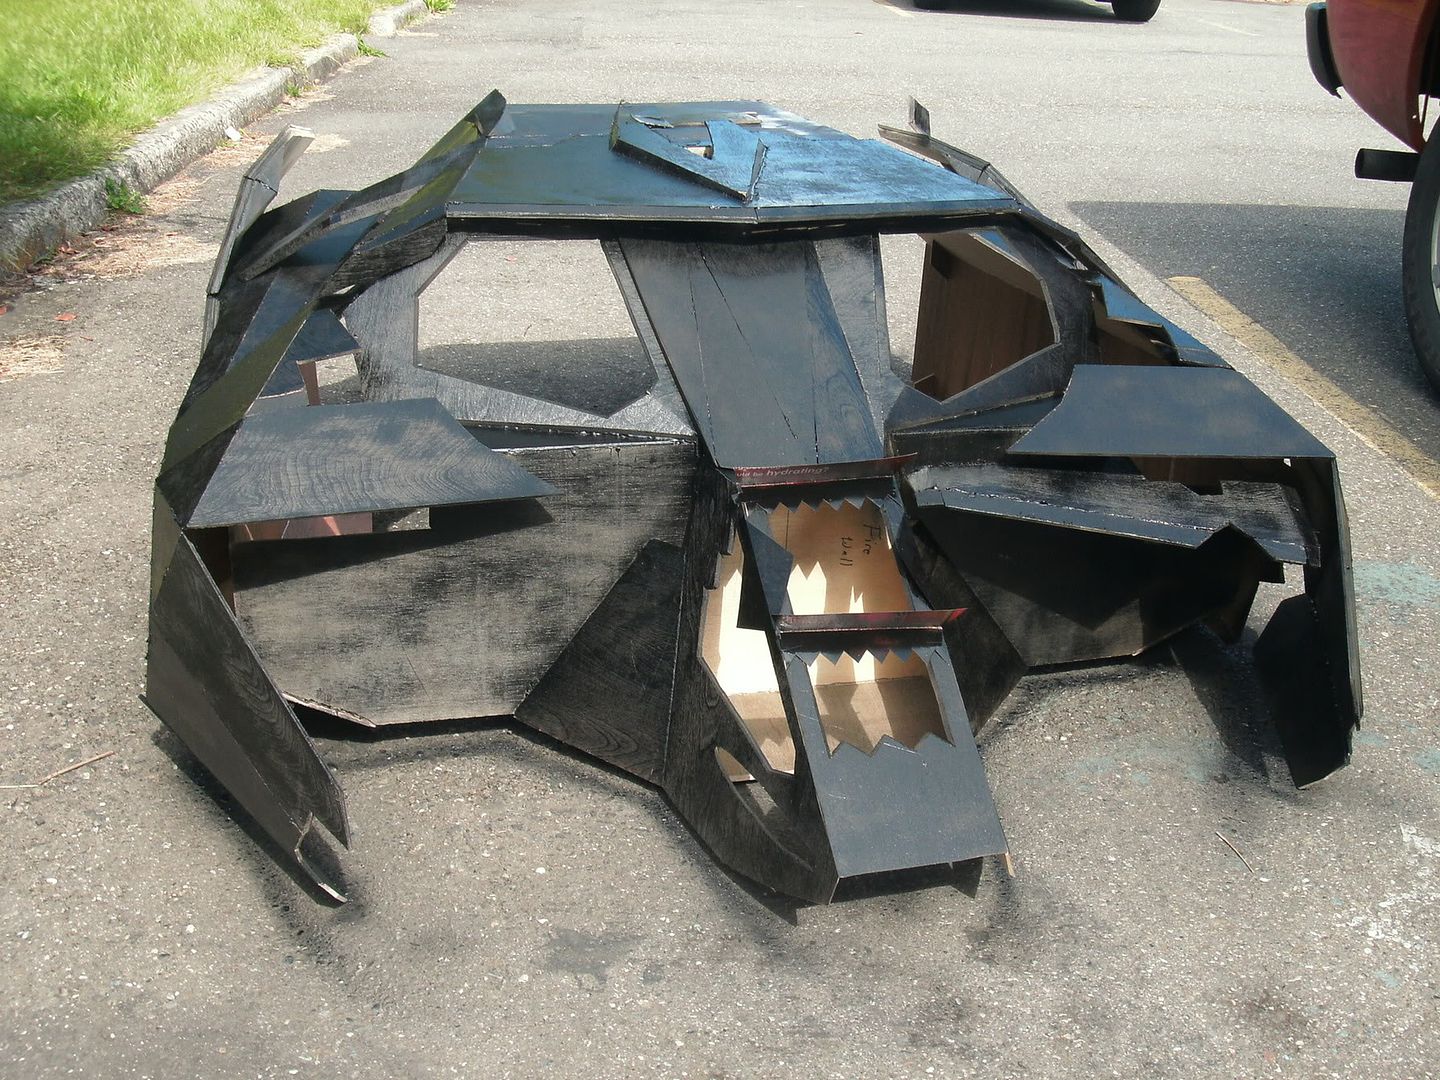 Shaggy's 1989 Batmobile